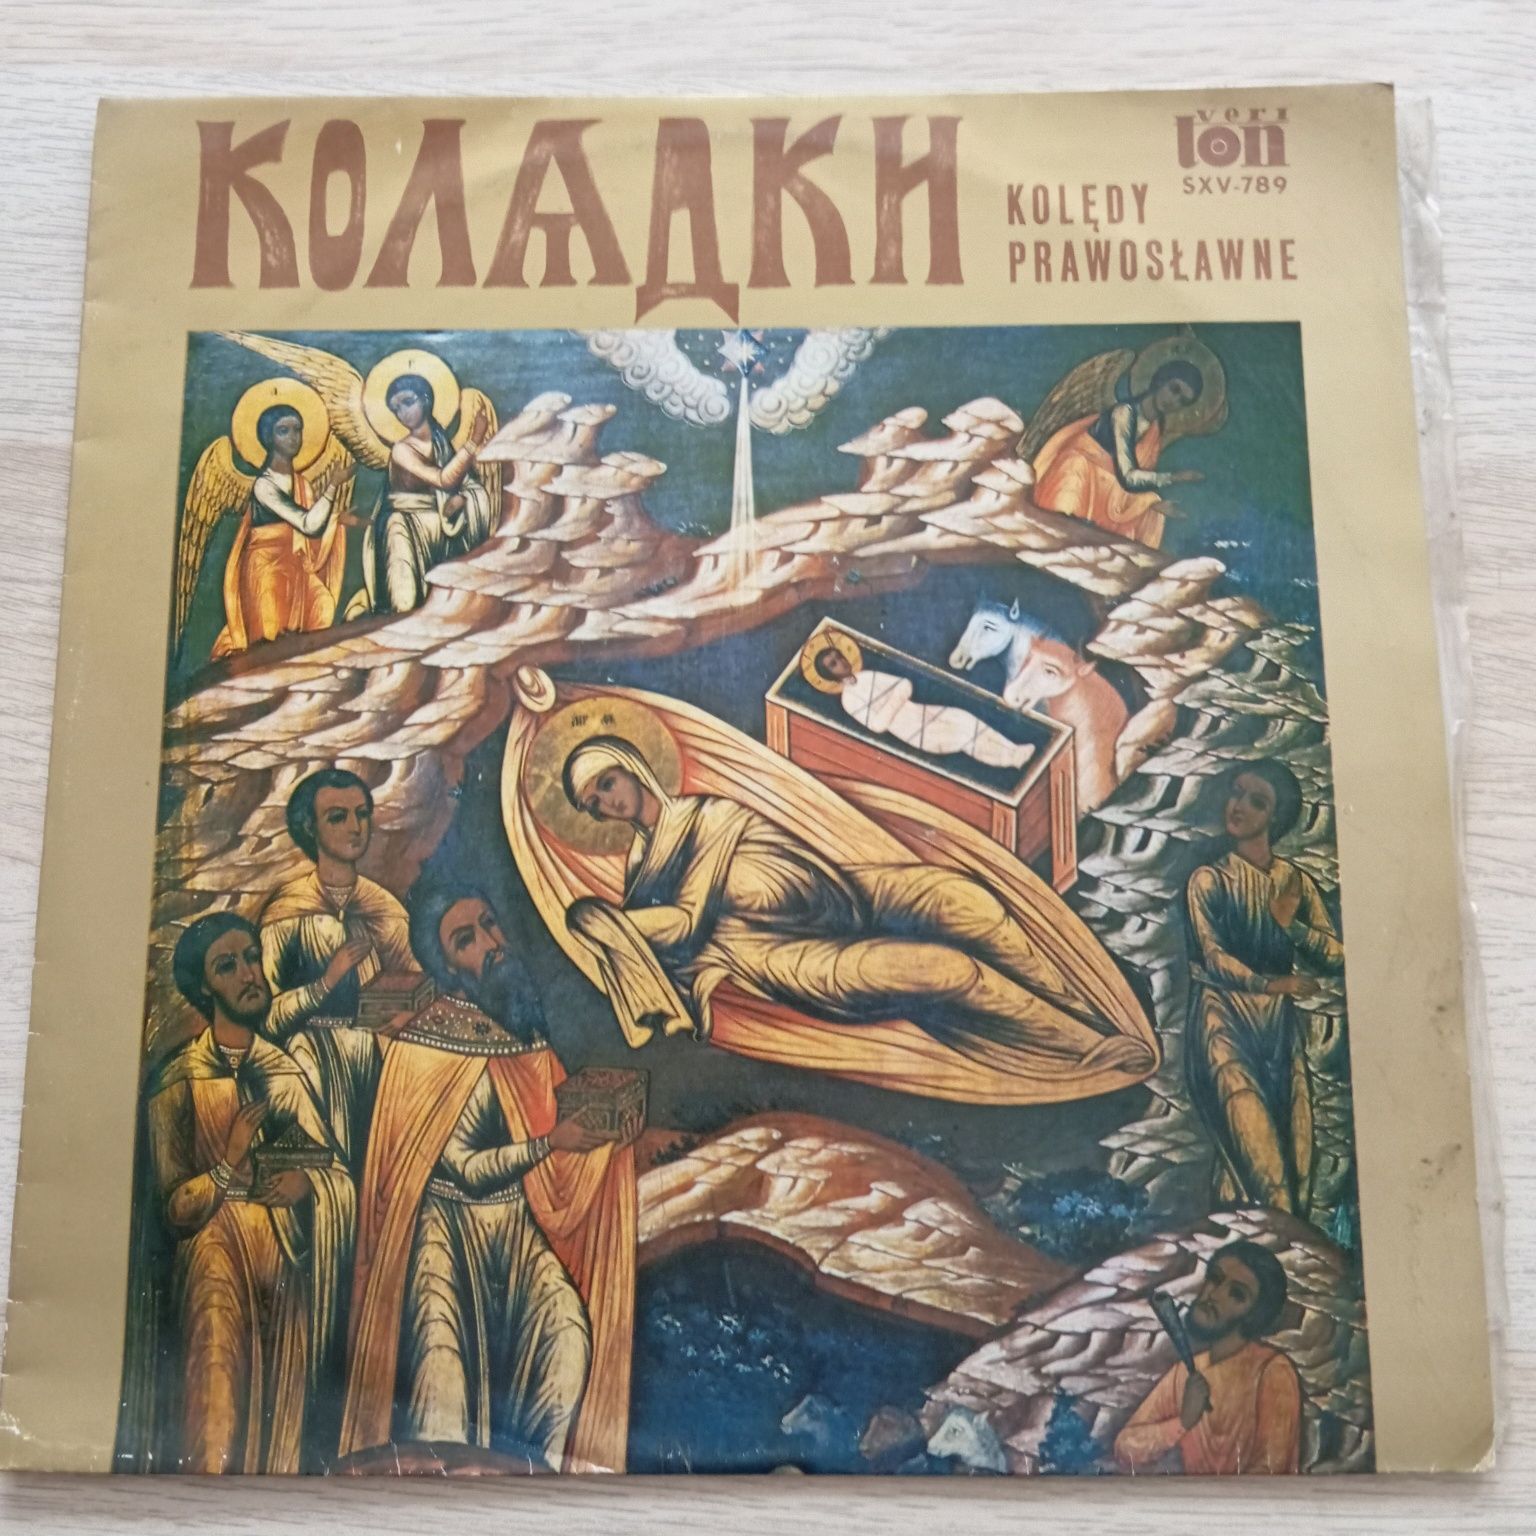 Kolędy prawosławne, płyta winylowa w dobrym stanie